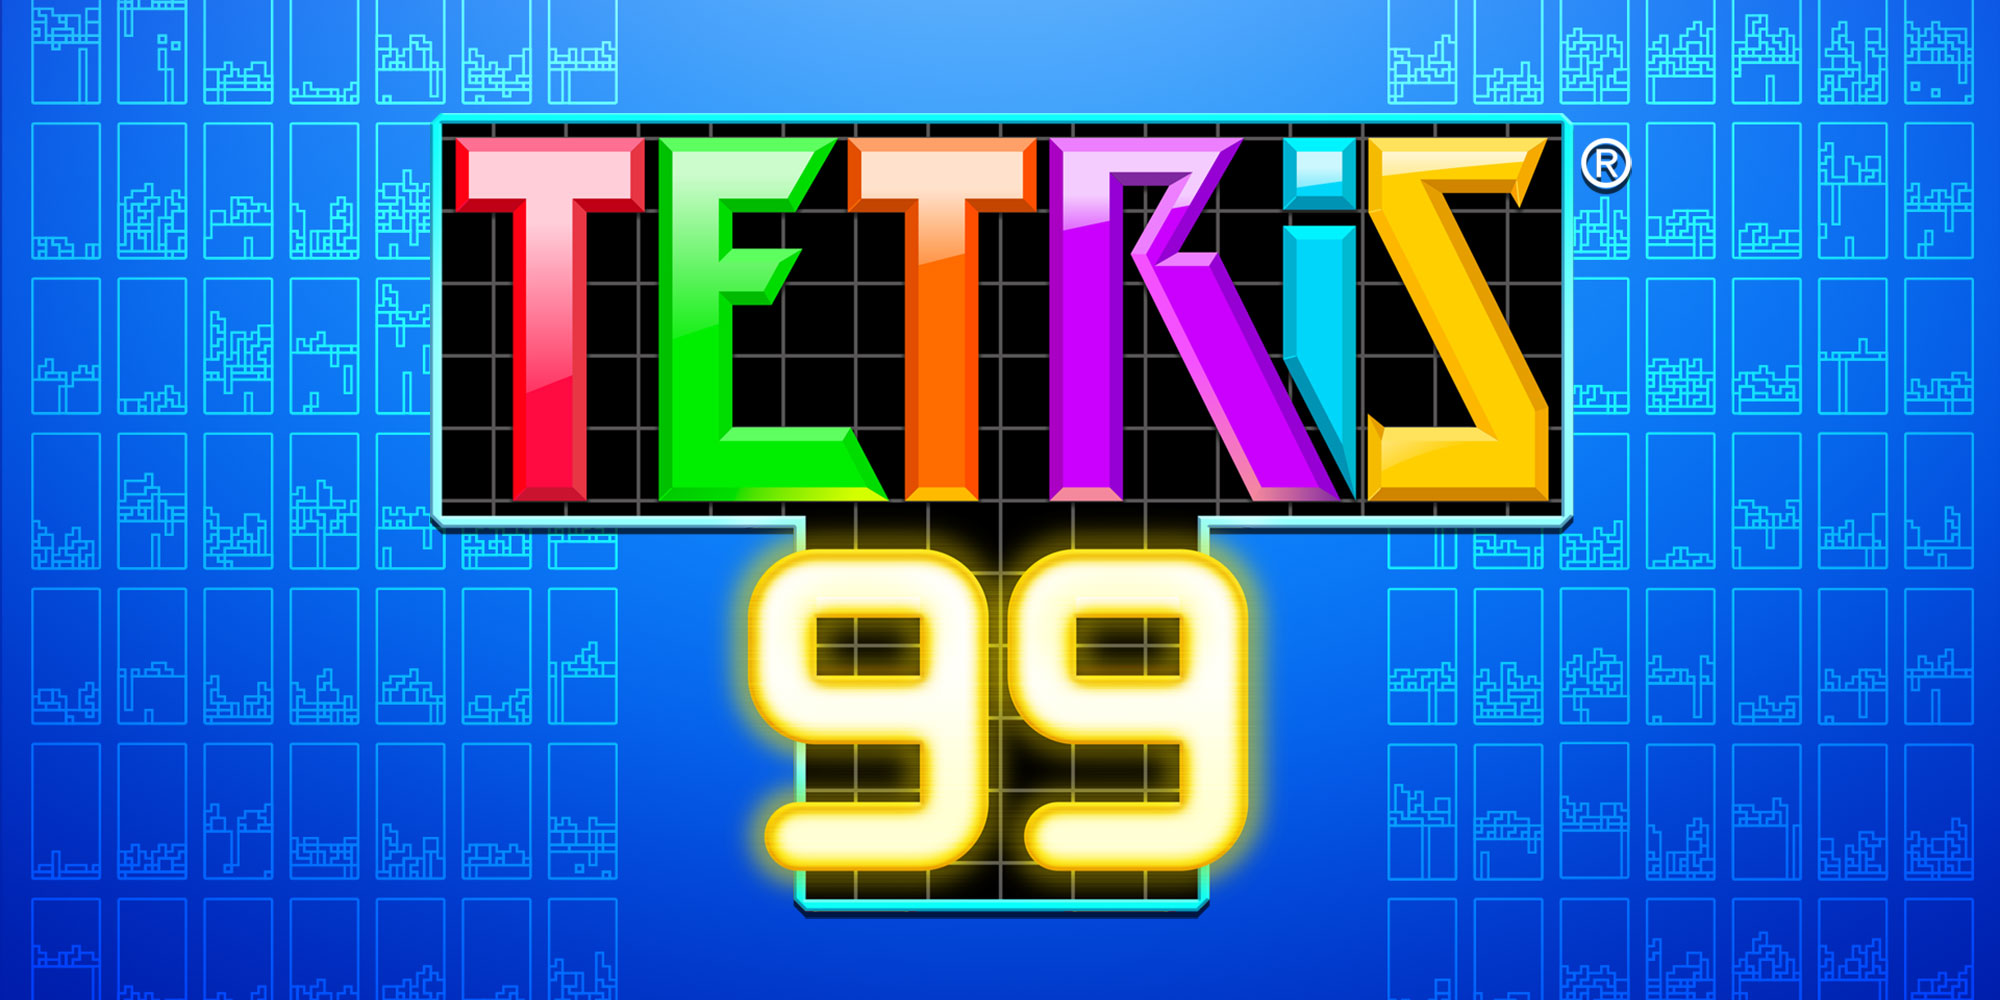 tetris 99 3ds